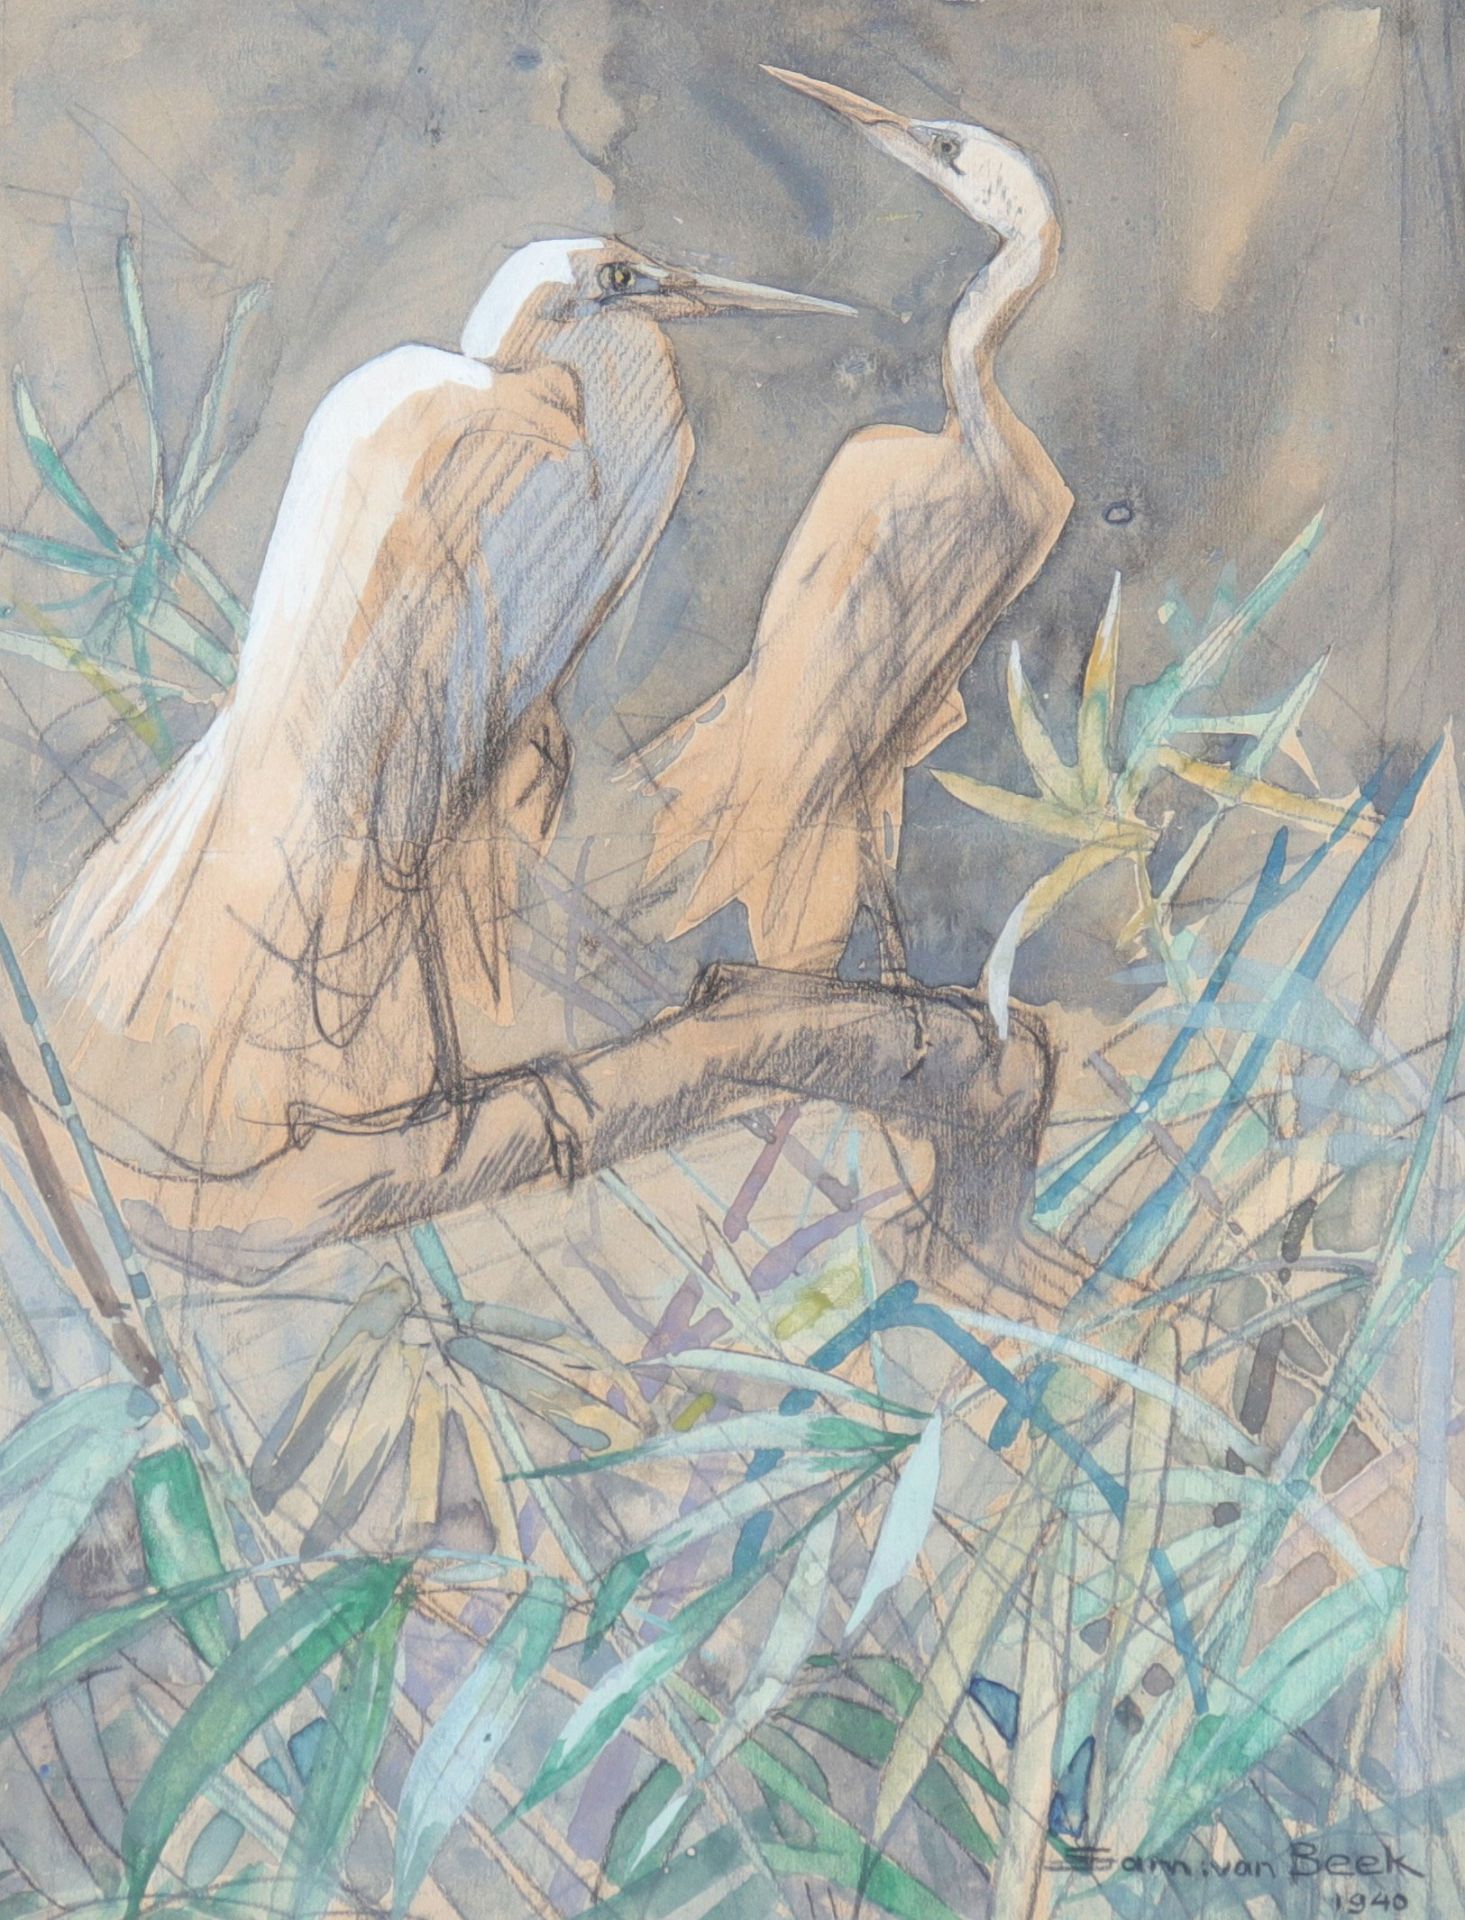 "Sam VAN BEEK (1878-1957) watercolor "the herons"